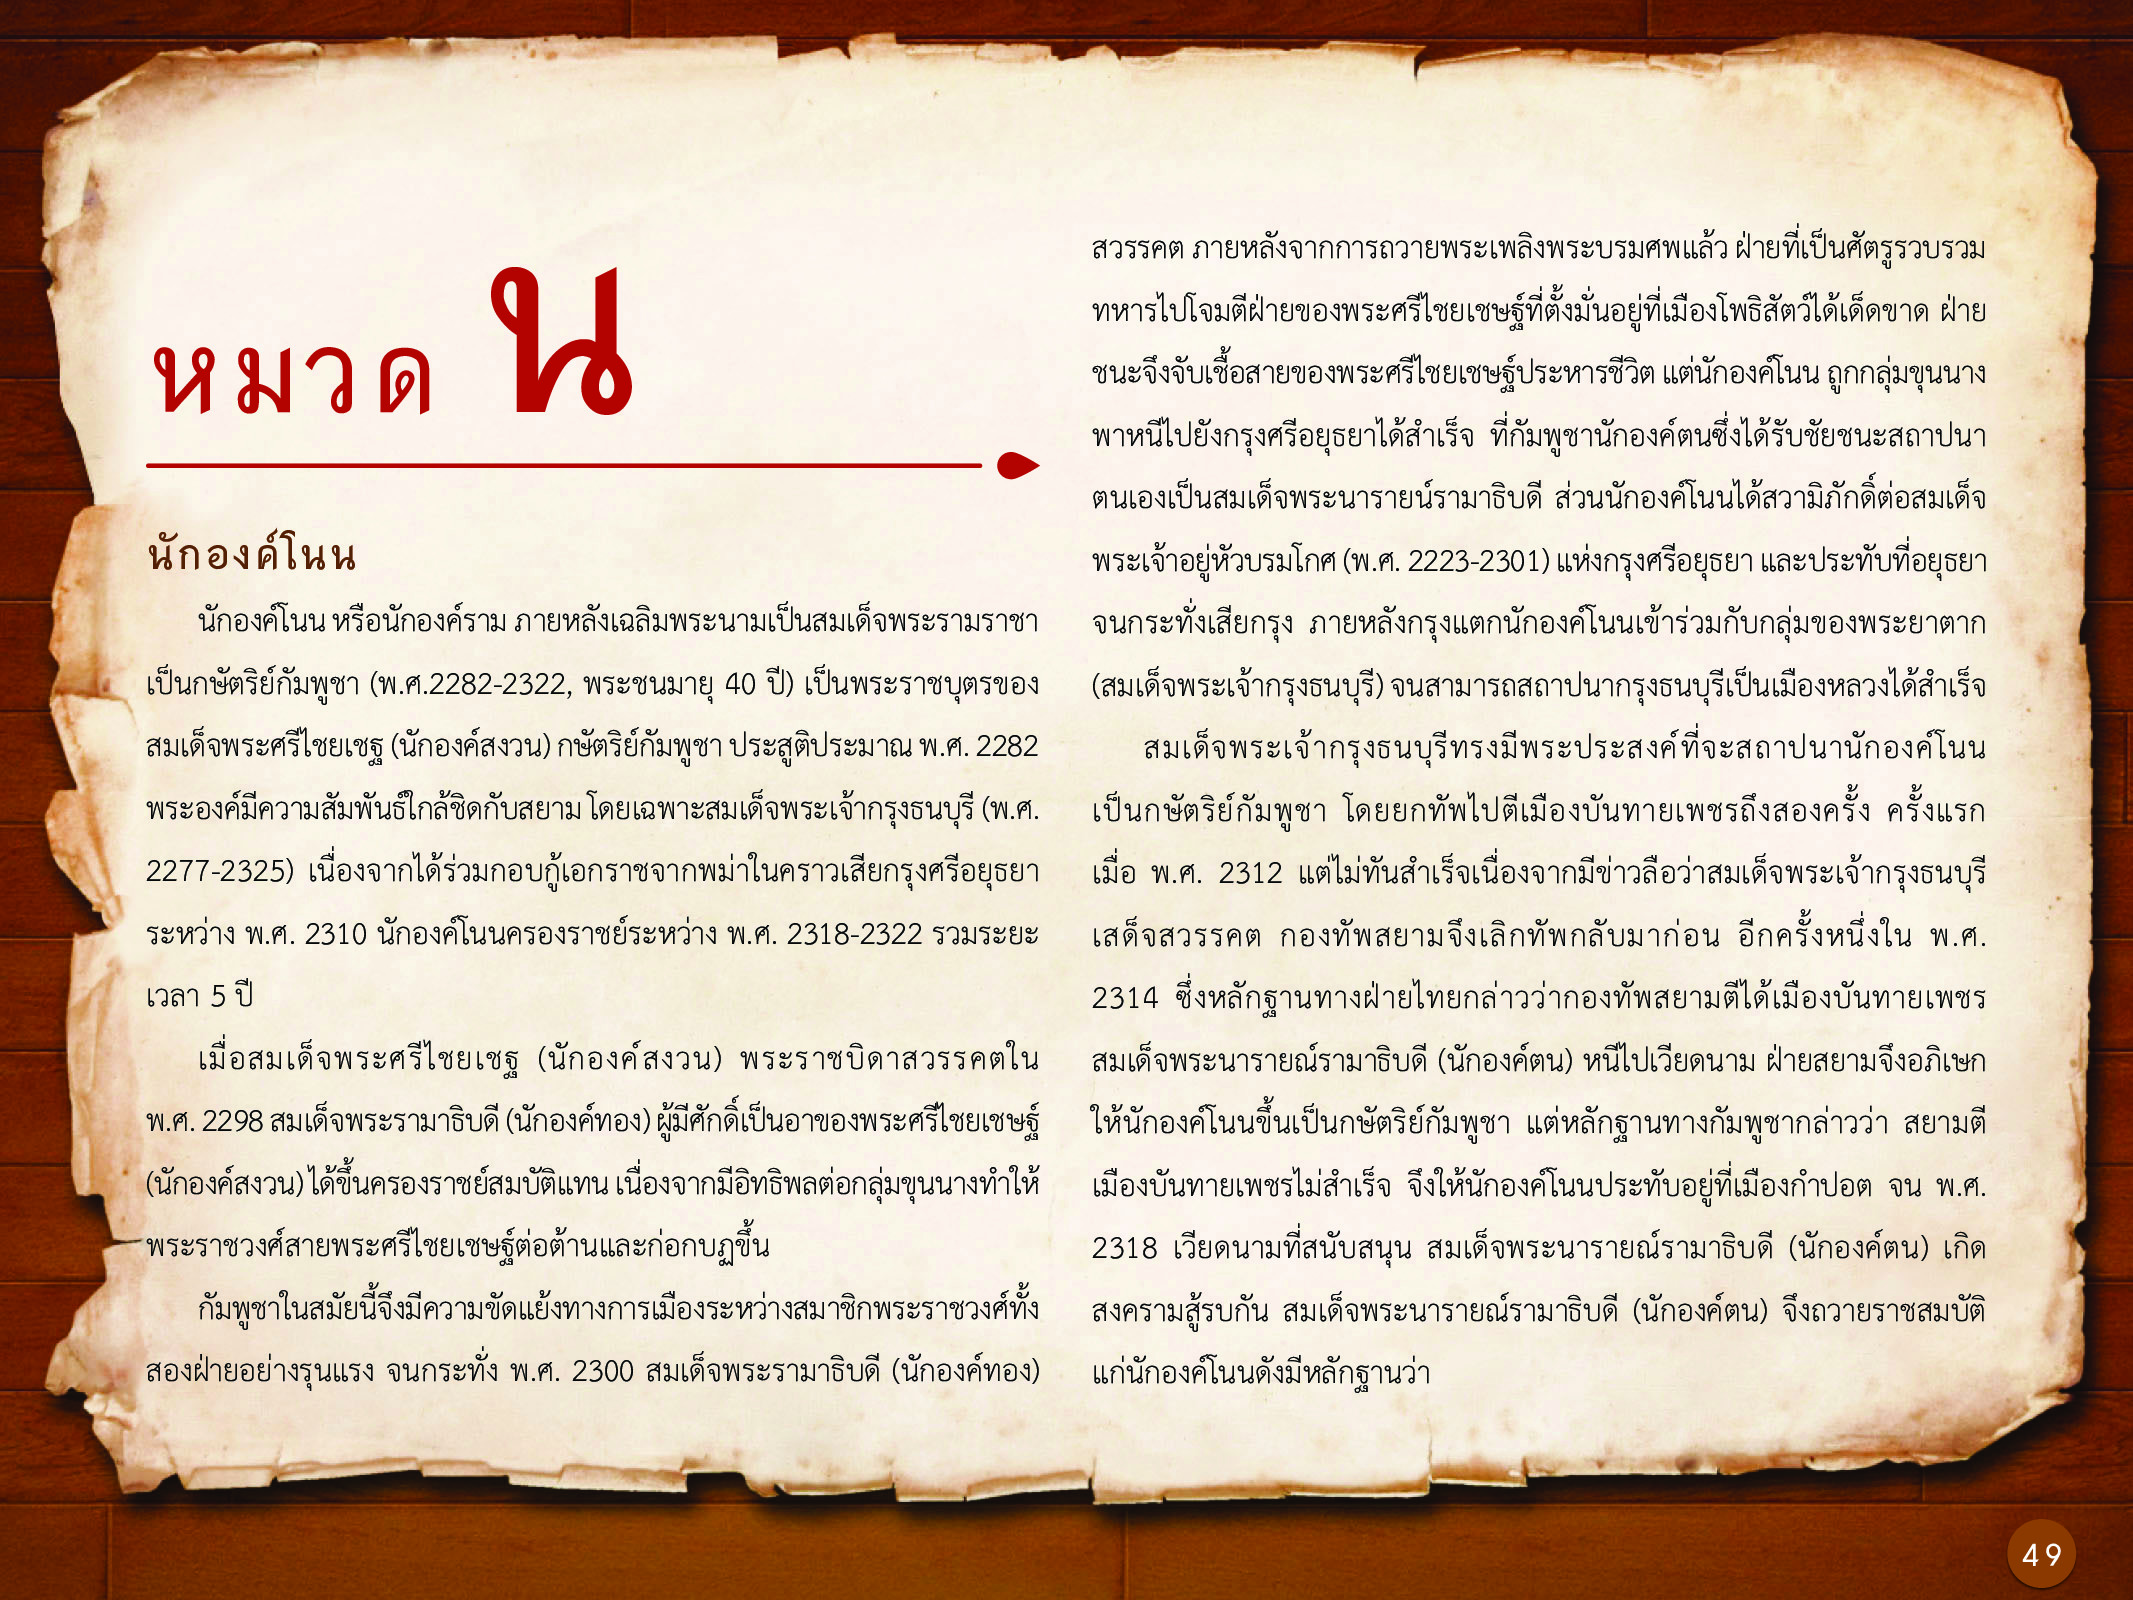 ประวัติศาสตร์กรุงธนบุรี ./images/history_dhonburi/49.jpg